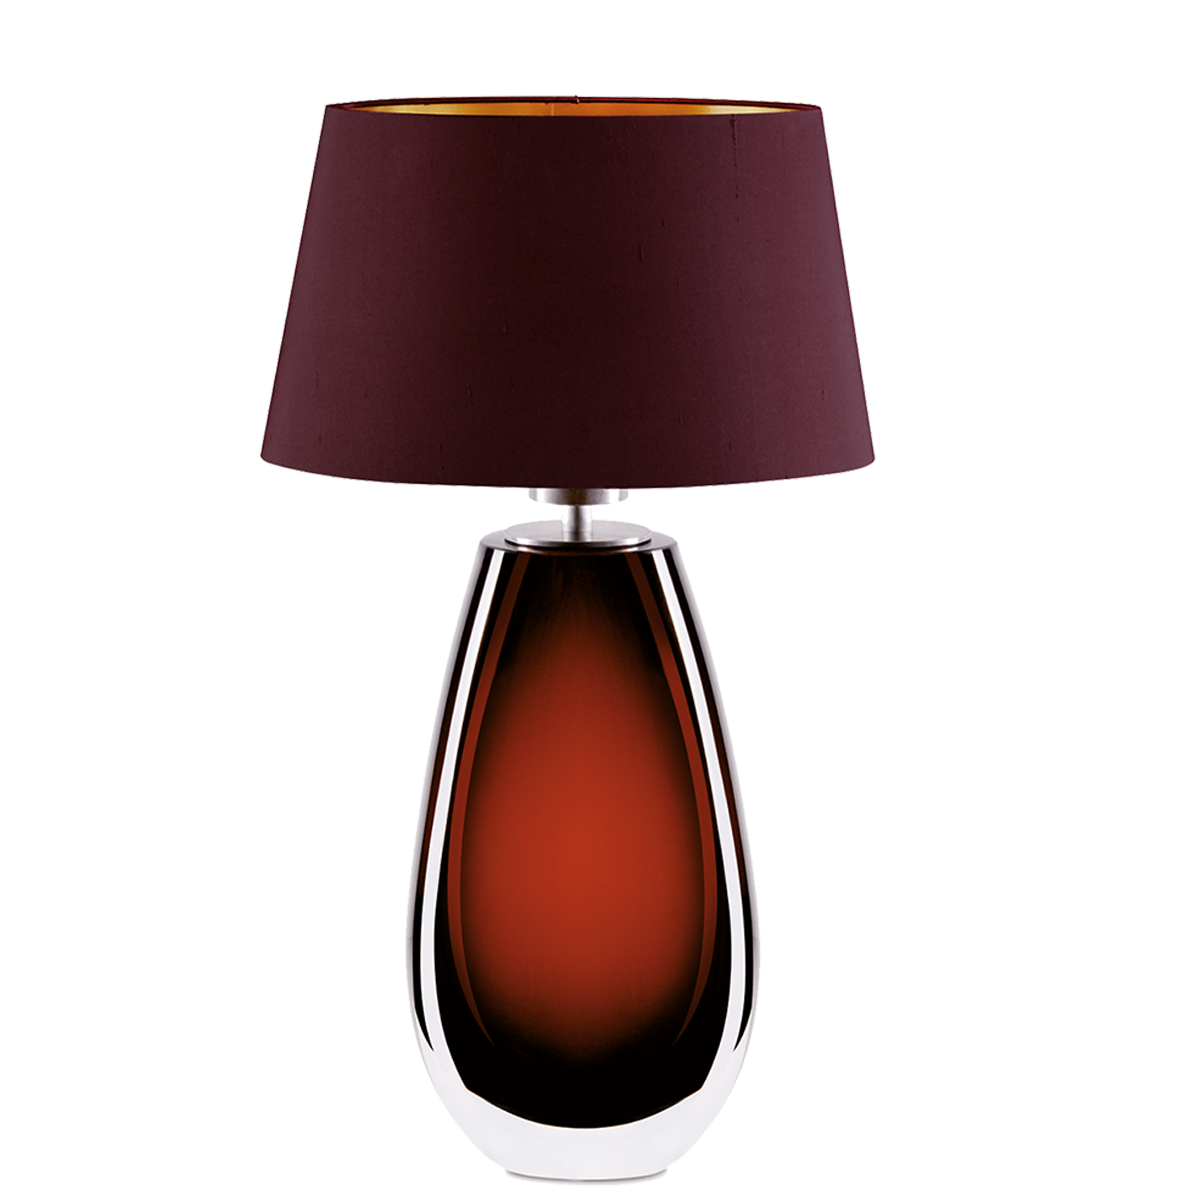 Murana 4 exklusive große ovale Tischleuchte, Glas im Farbton Marone, mit Seiden Lampenschirm Menzel Leuchten Manufaktur